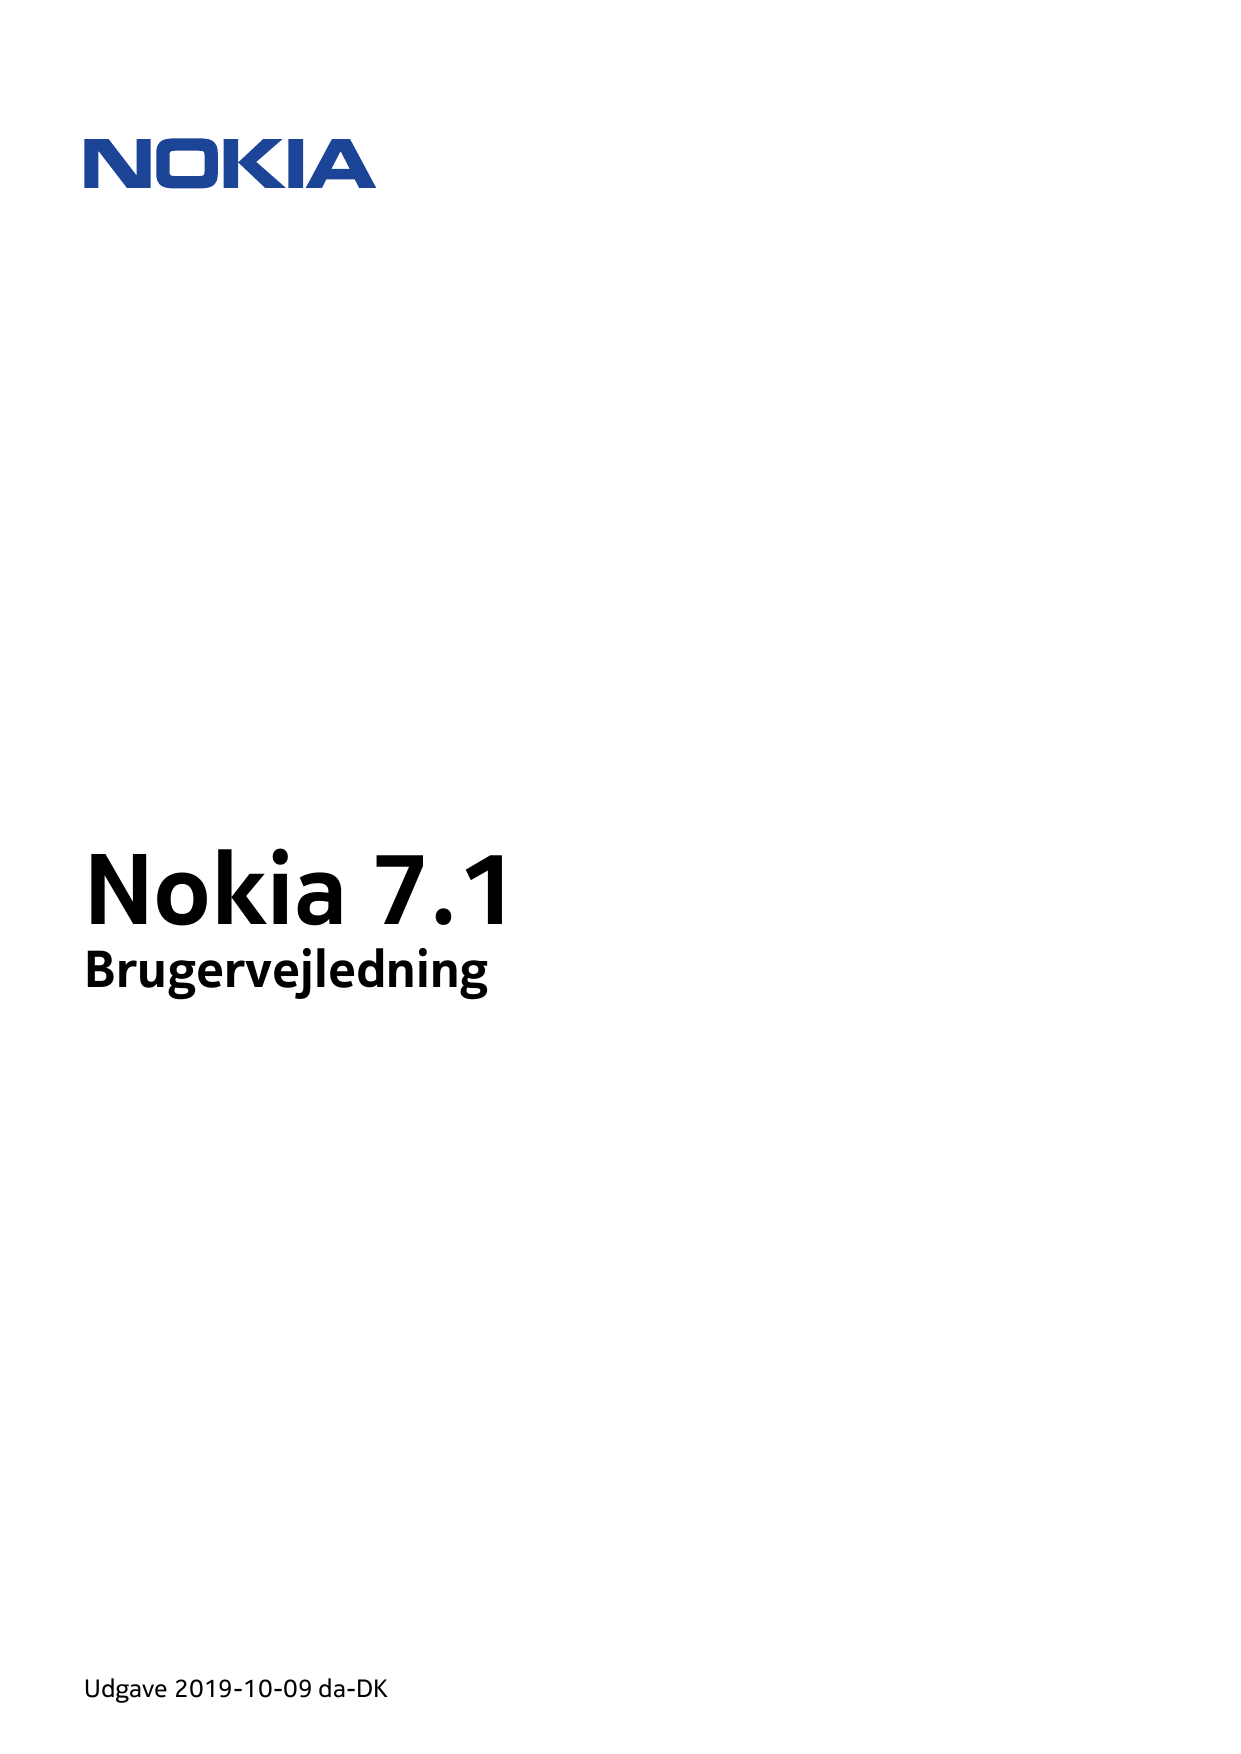 Nokia 7.1BrugervejledningUdgave 2019-10-09 da-DK